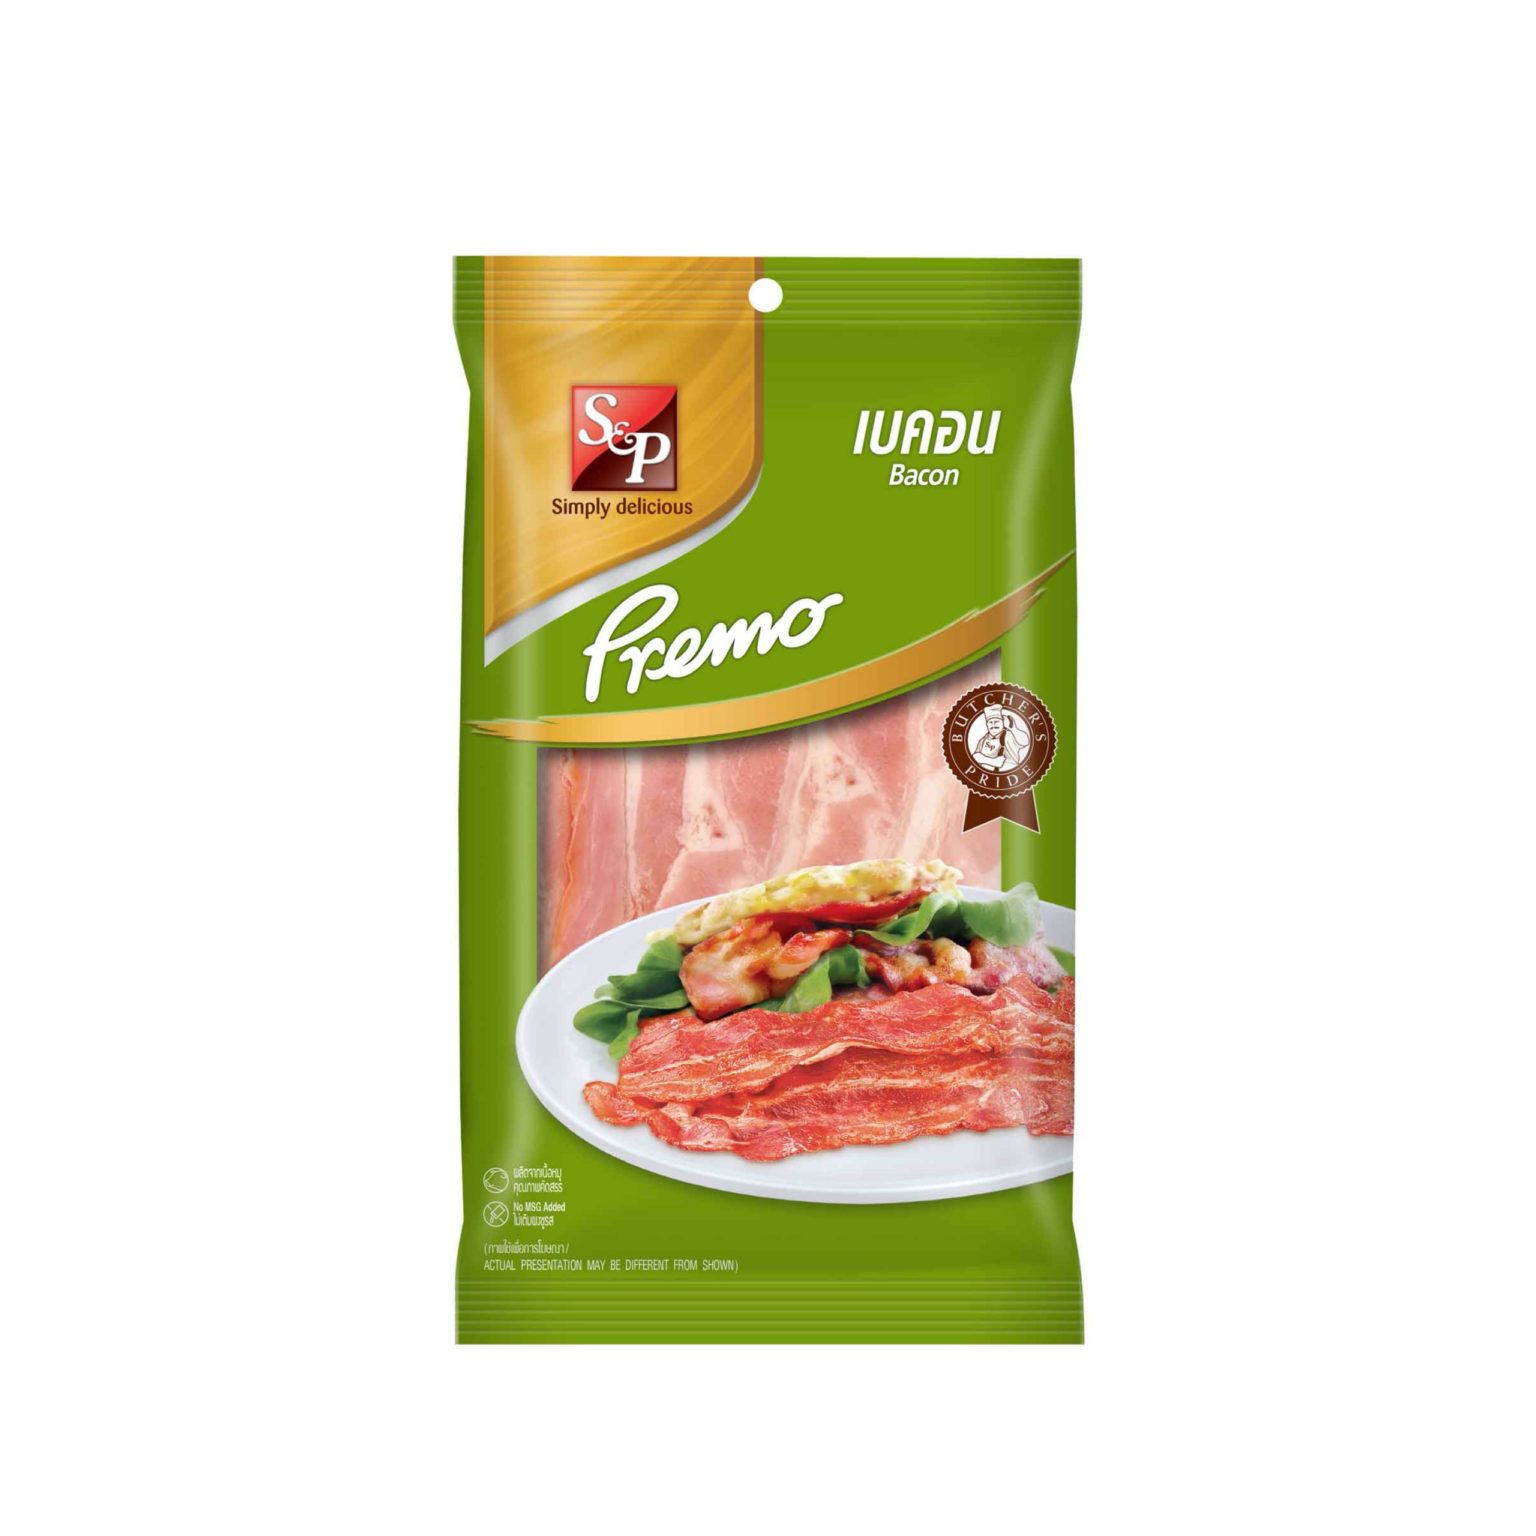 Premo Bacon